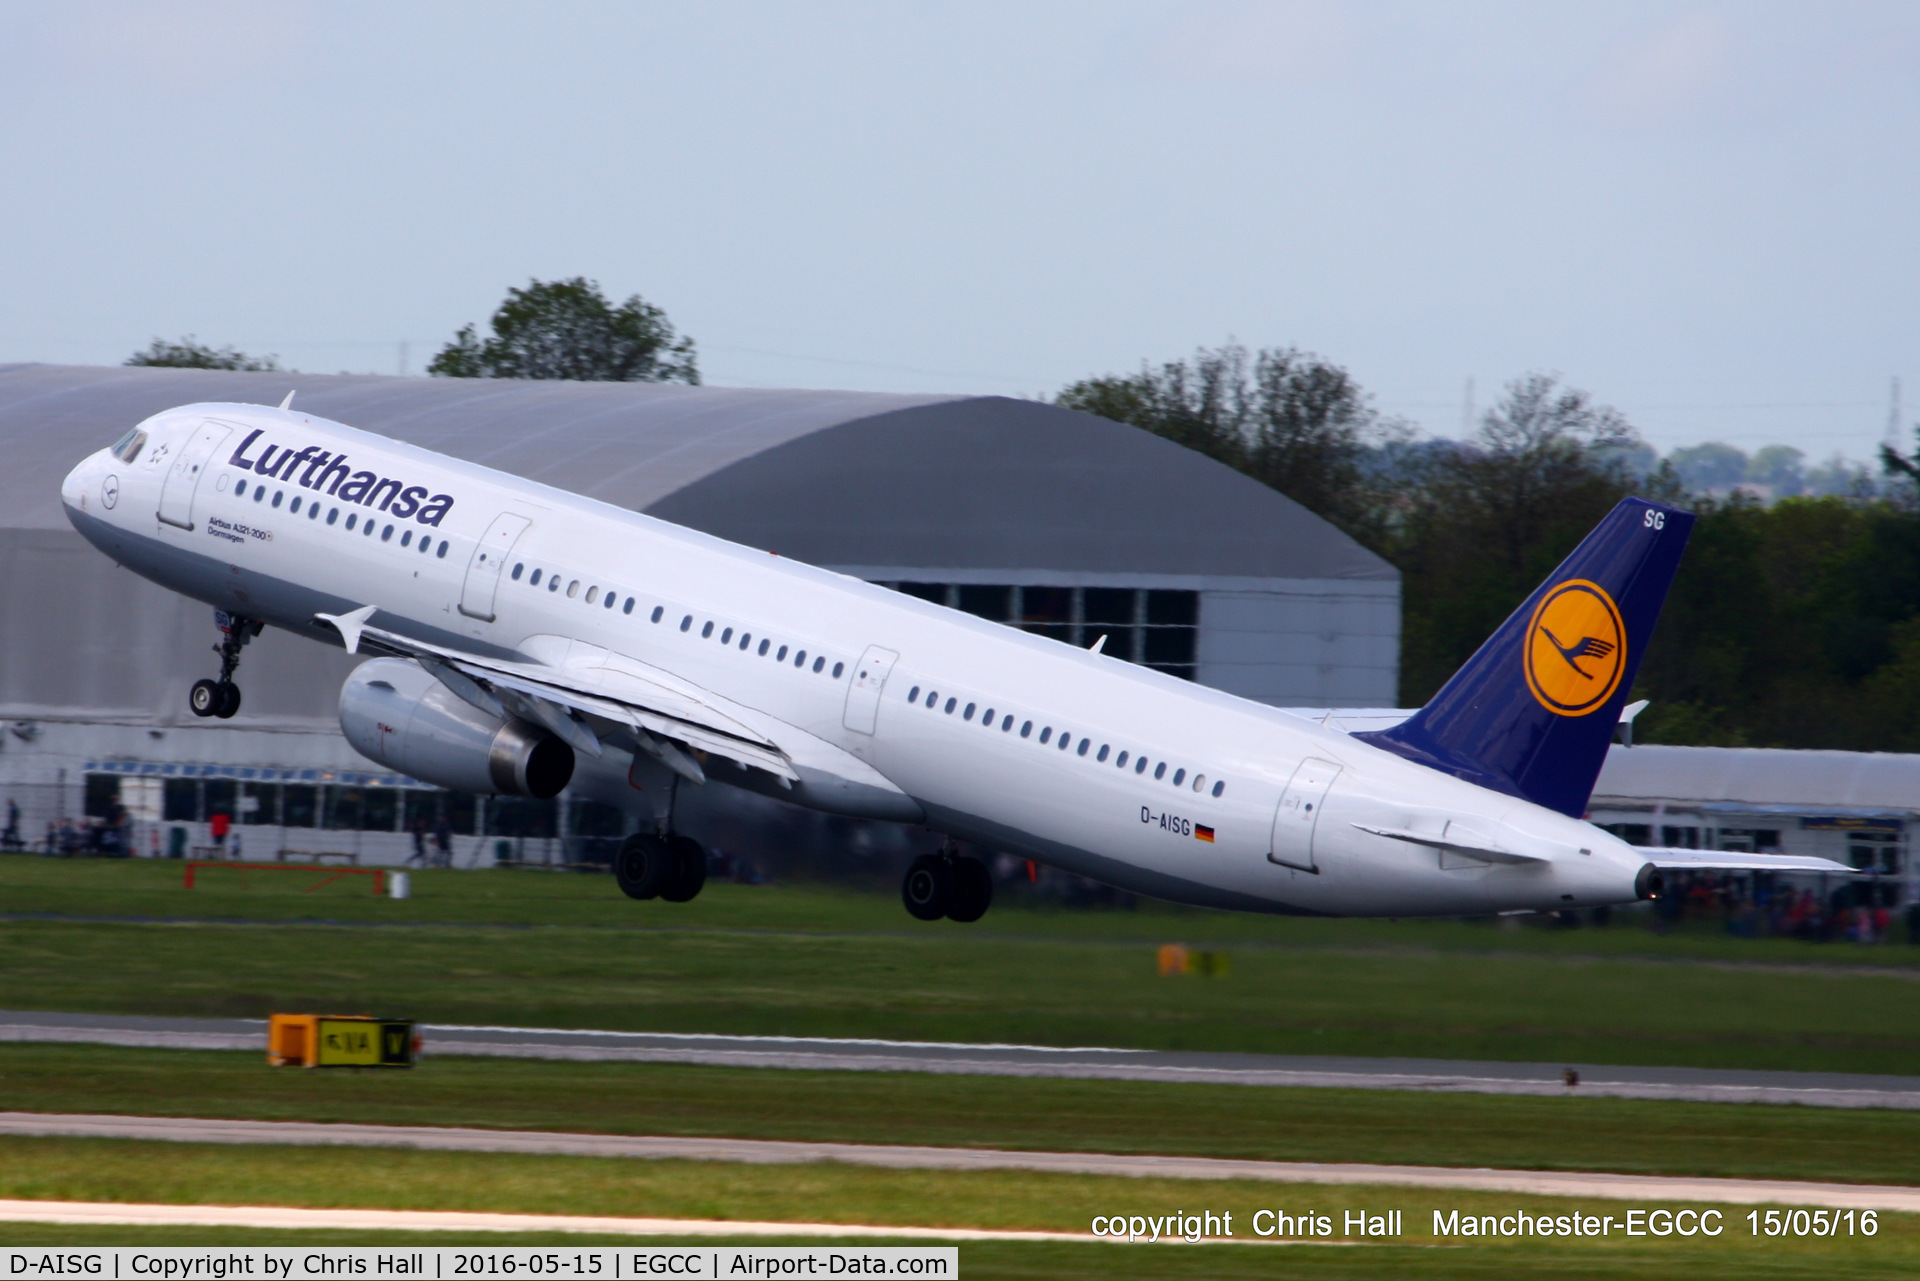 D-AISG, 2000 Airbus A321-231 C/N 1273, Lufthansa